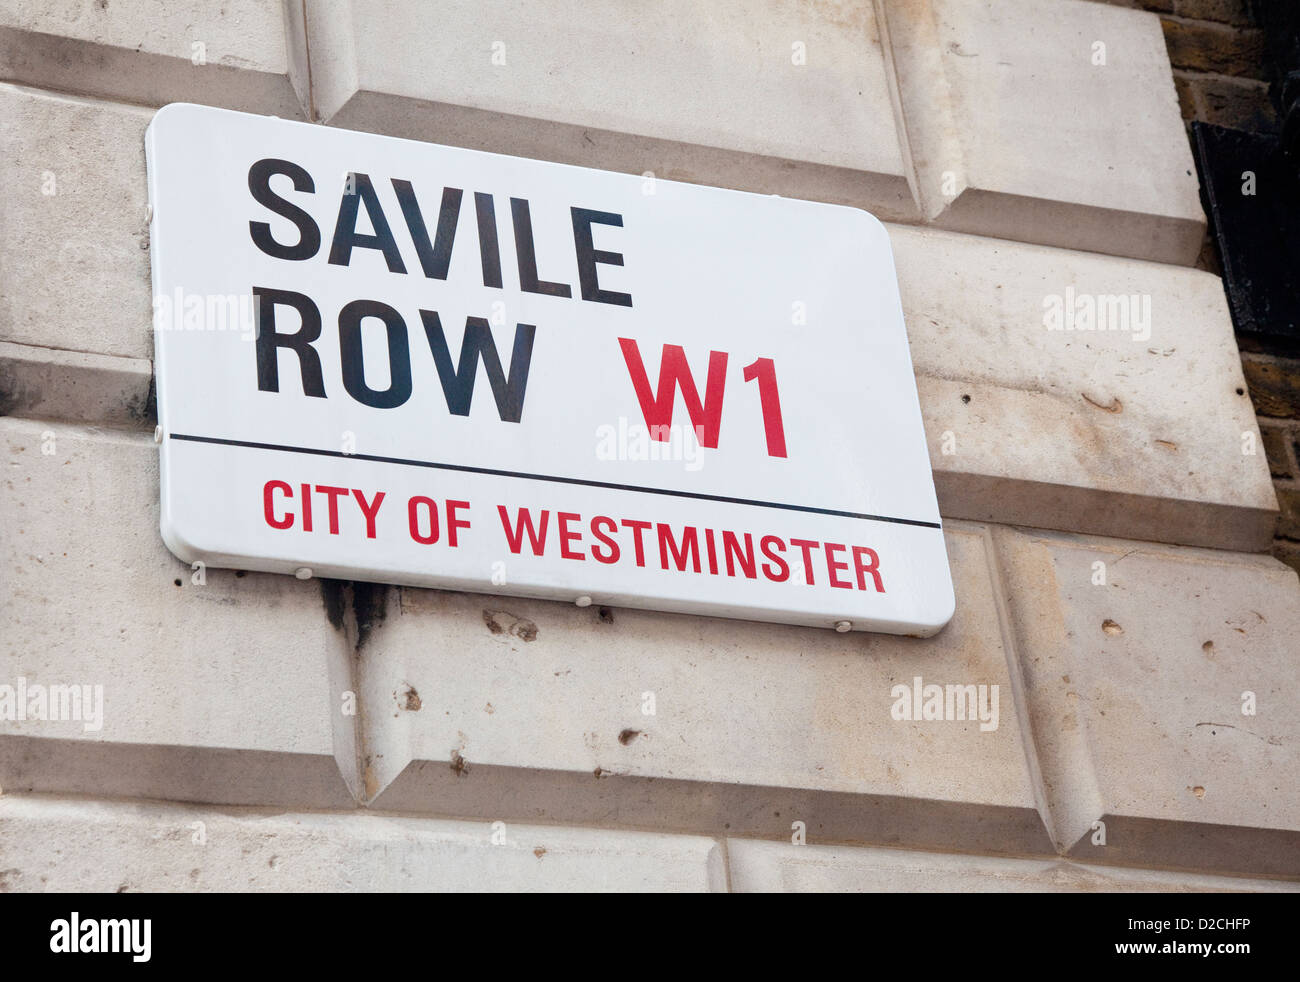 Plaque de rue, Savile Row, London, W1, au Royaume-Uni. Accueil sur mesure de la couture. Banque D'Images